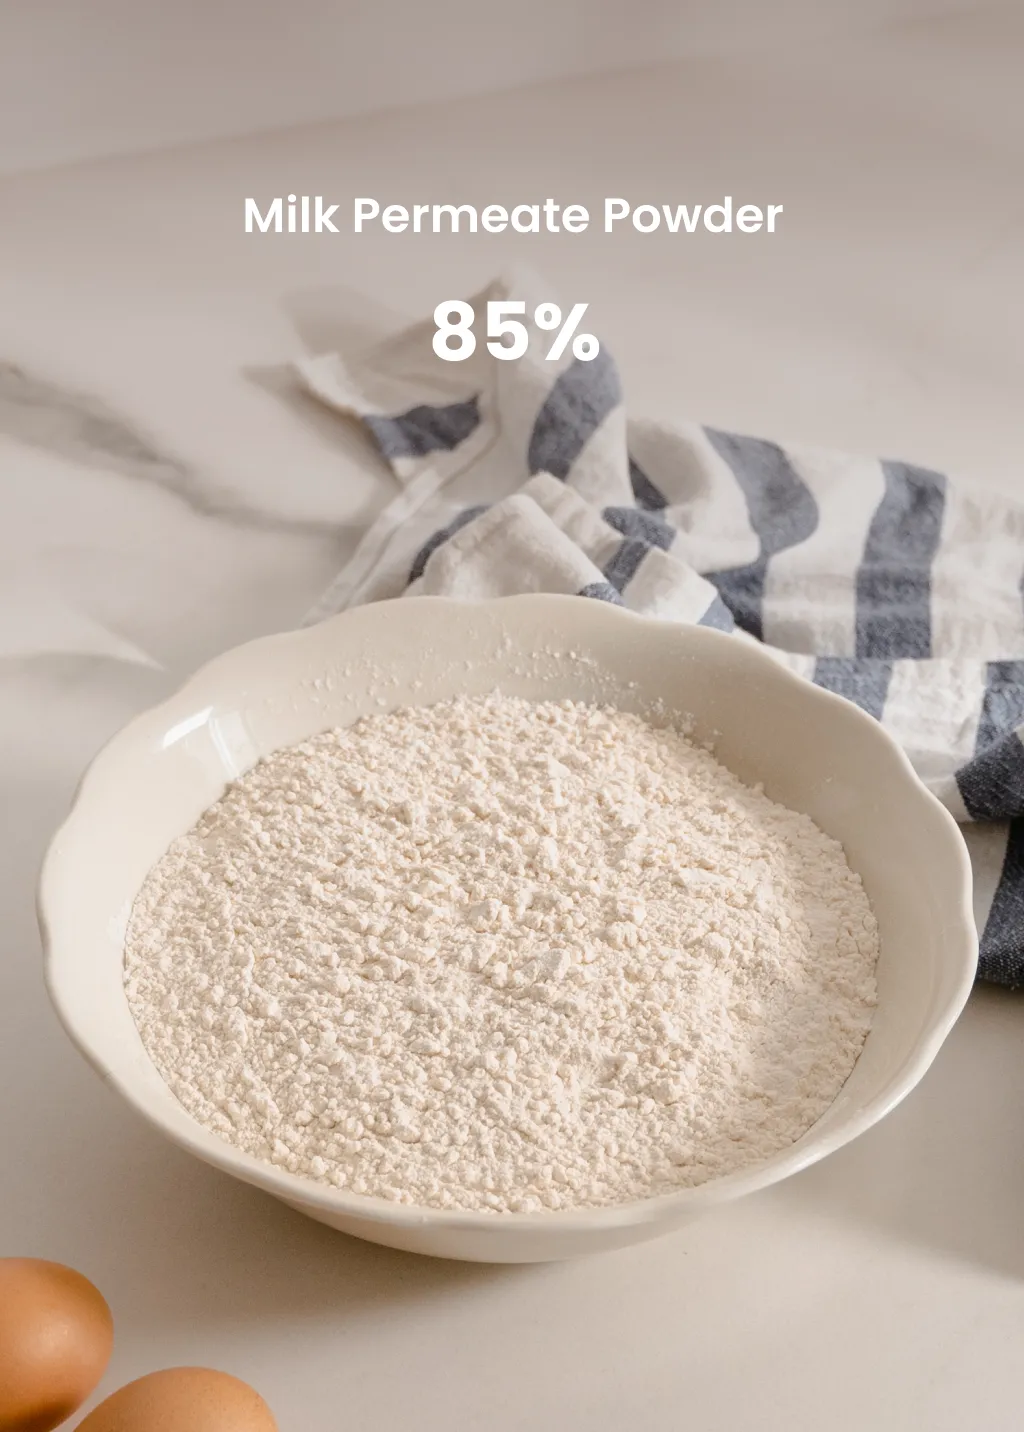 Milk Permeate Powder 85 from Milk Powder Asia